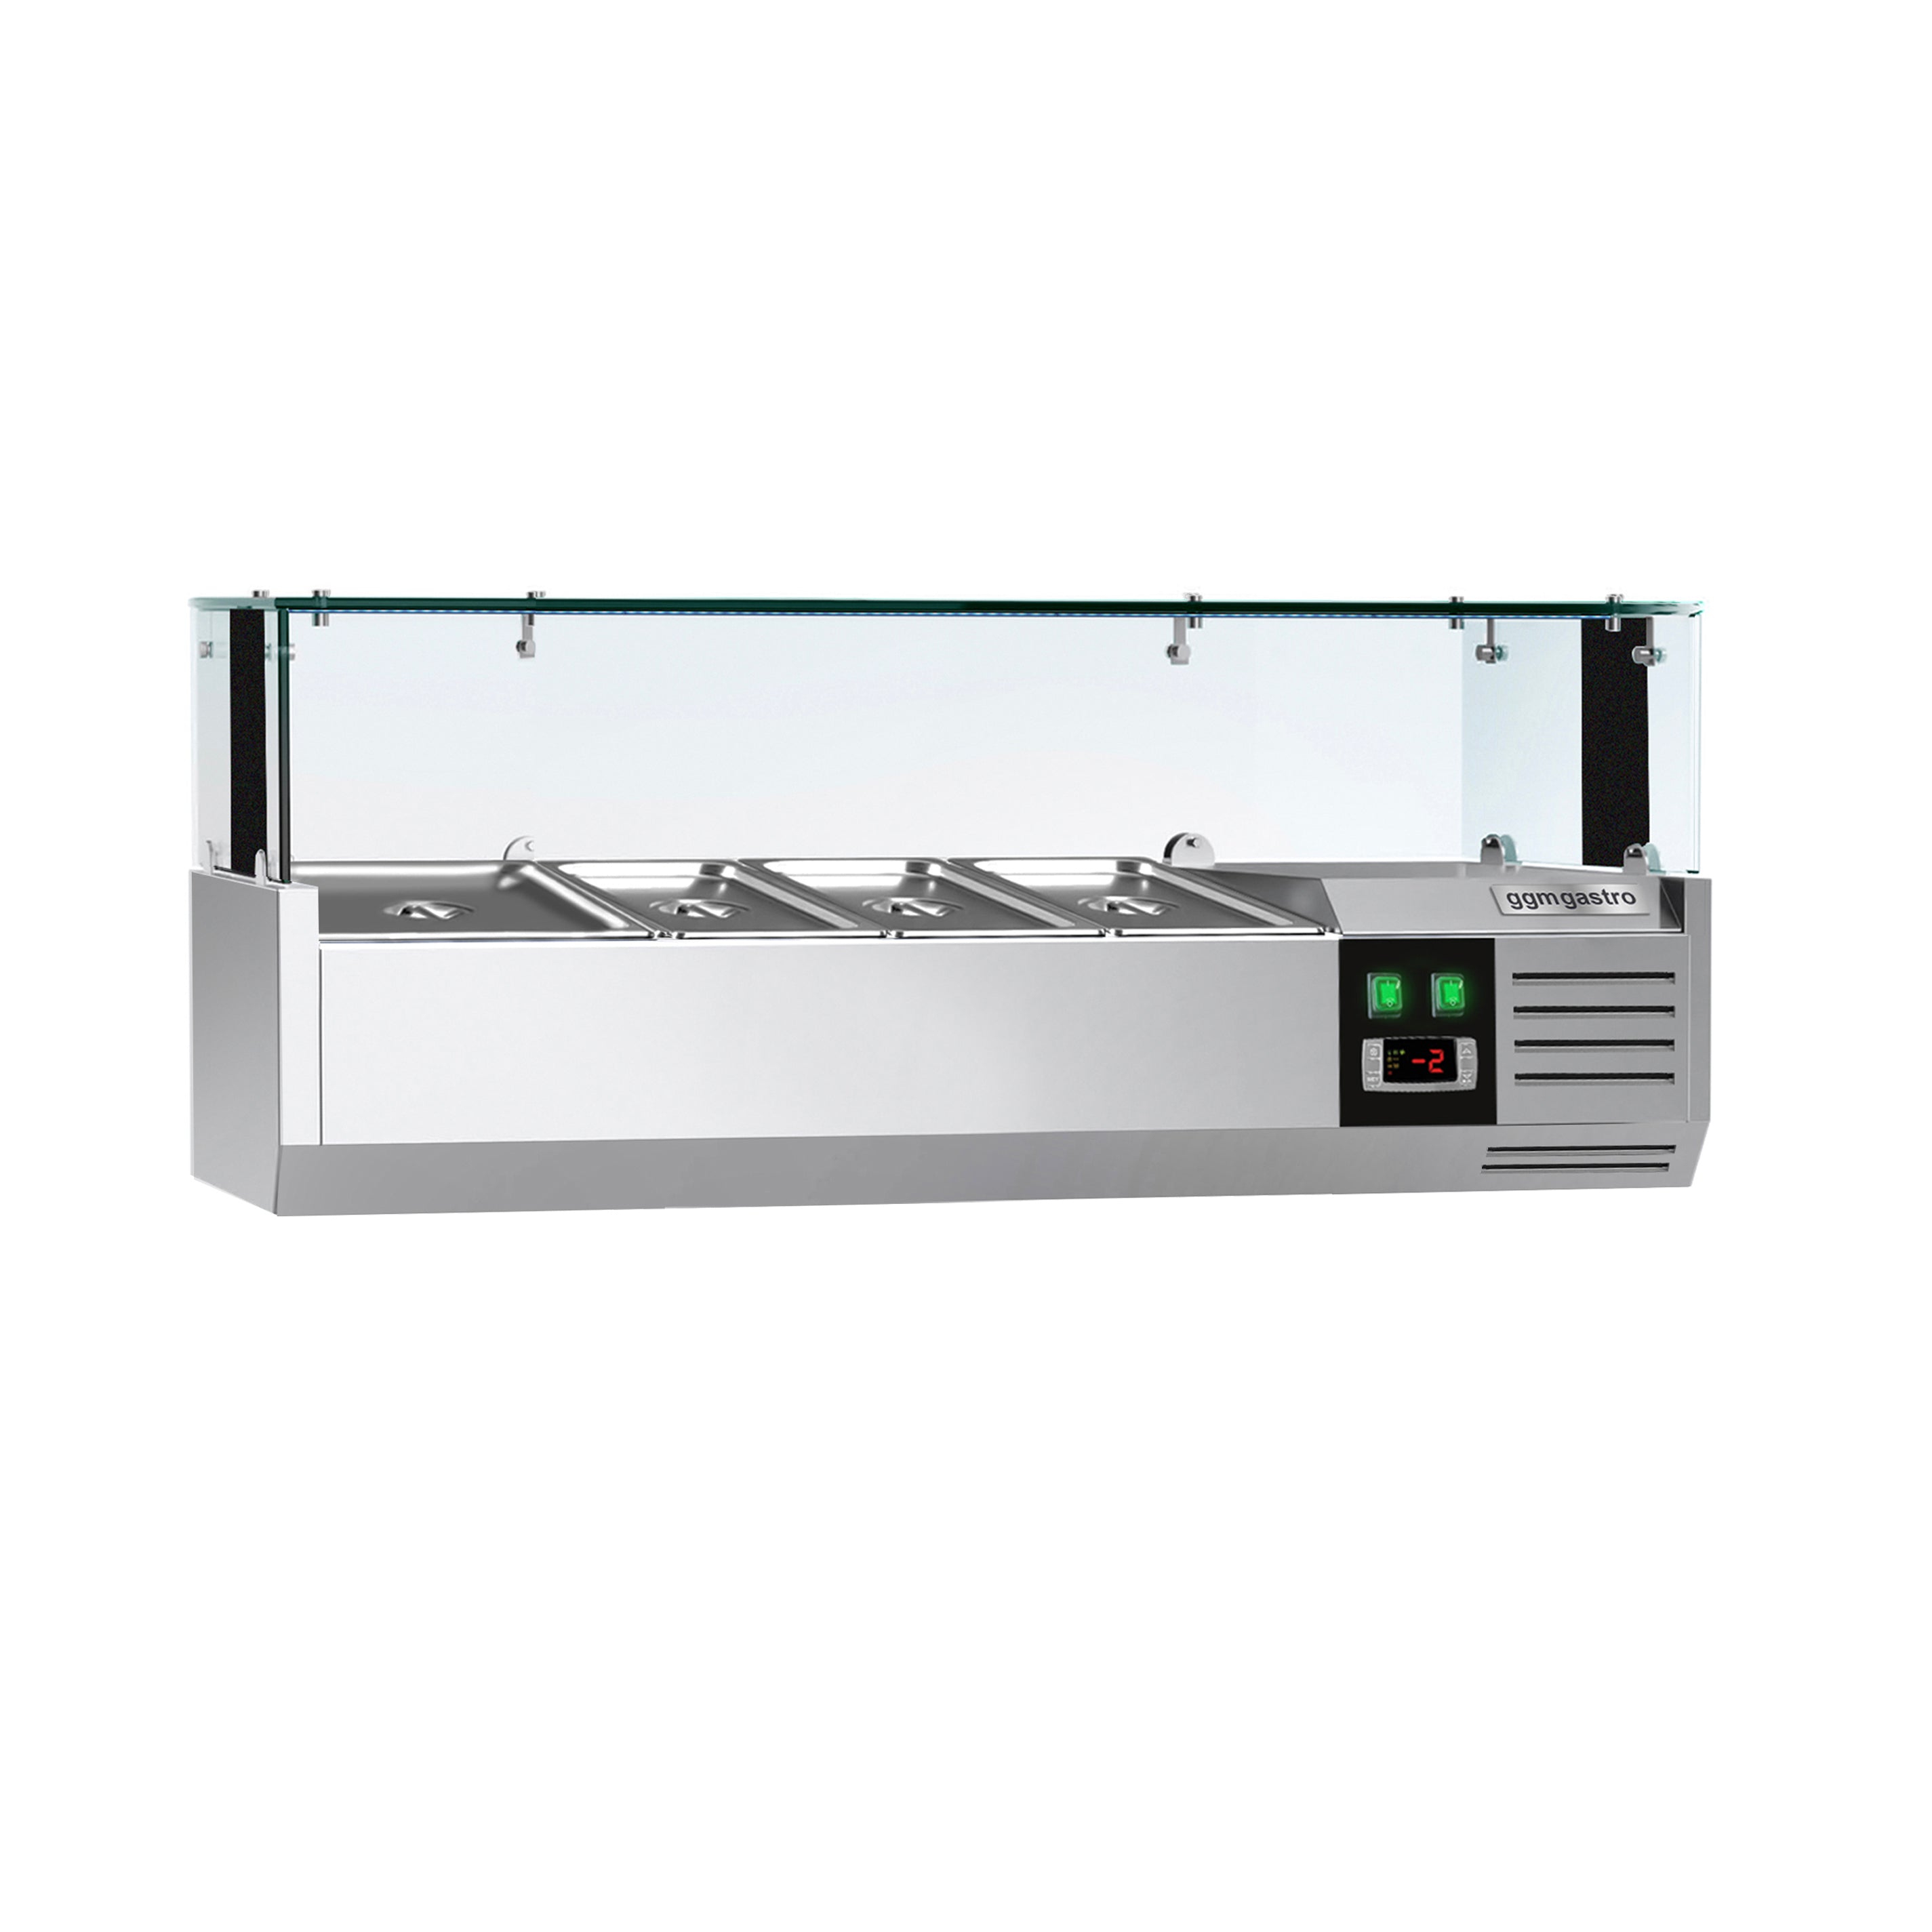 Хладилна горна витрина PREMIUM - 1,2 x 0,4 m - за 3x 1/3 + 1x 1/2 GN контейнера